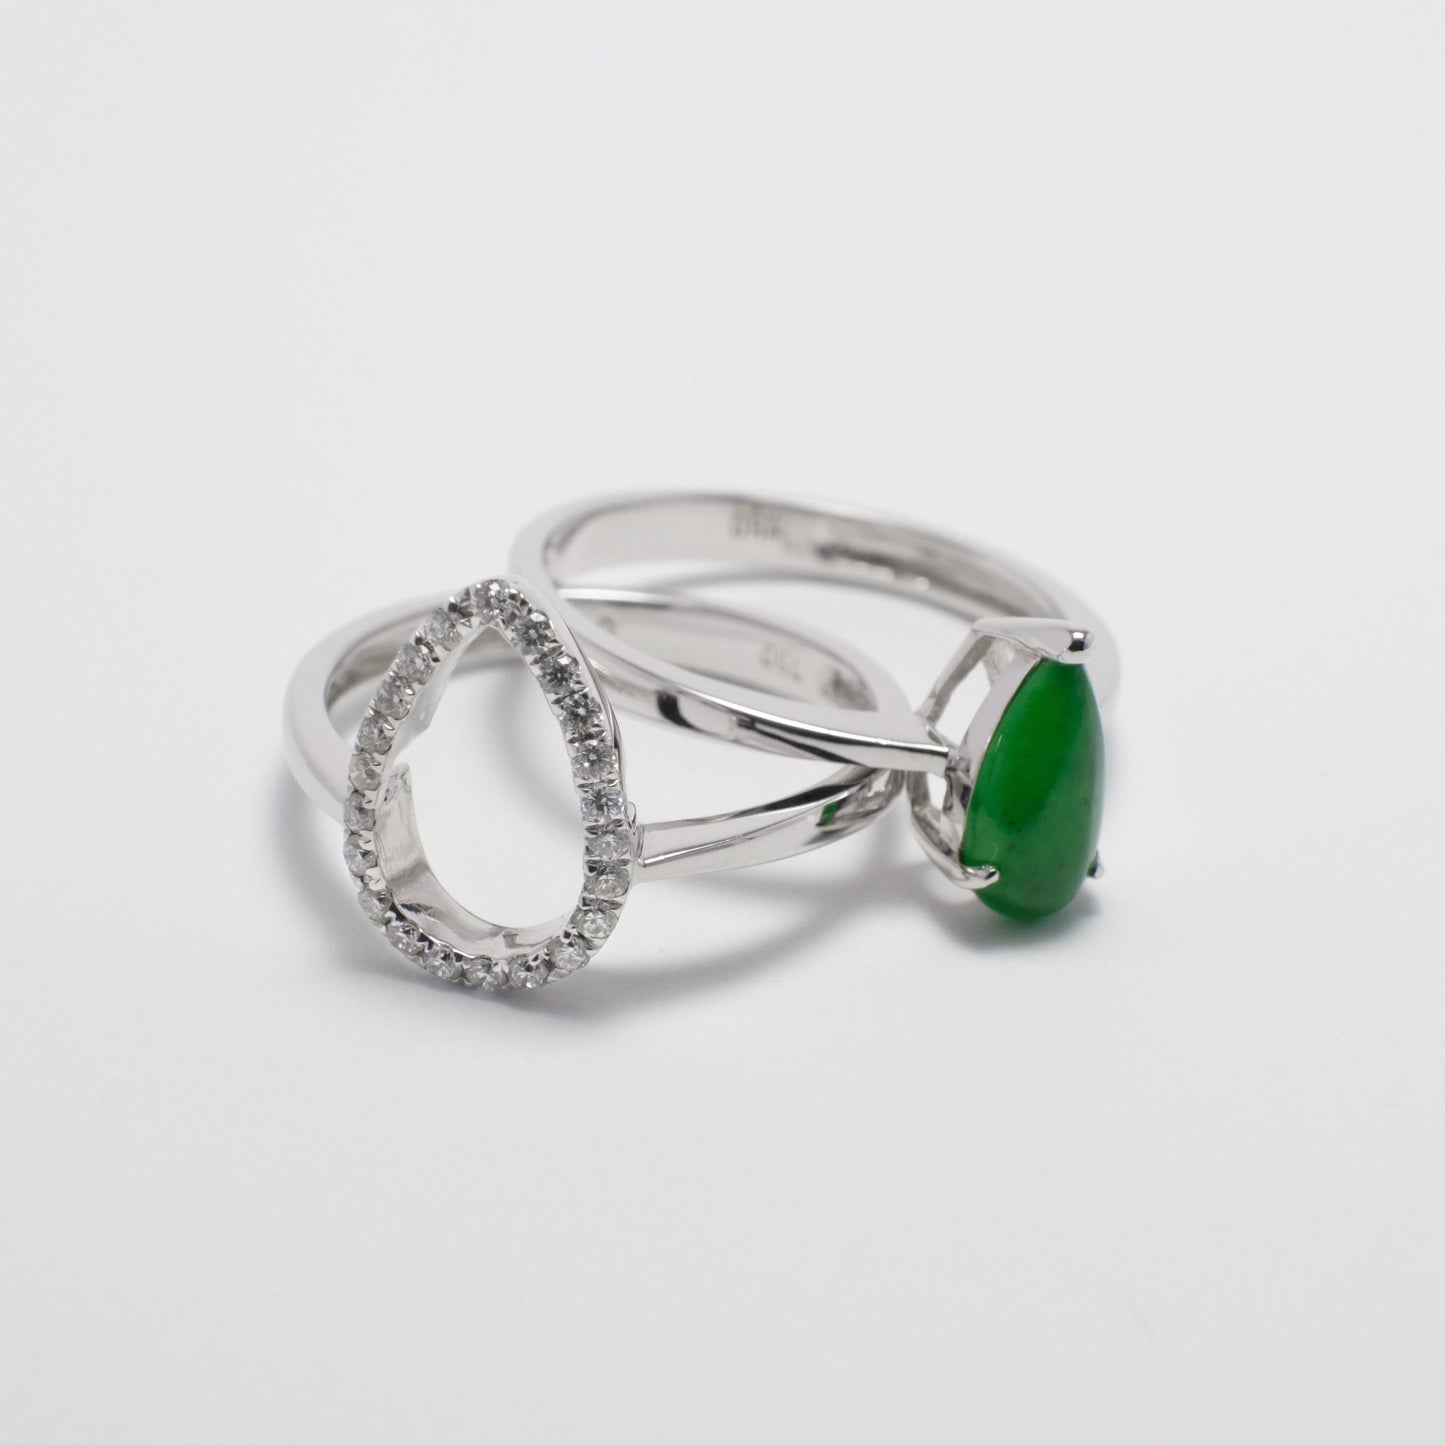 Ring - 18K白金緬甸帝皇綠水滴形天然翡翠配鑽石雙用戒指 - 雅玉珠寶